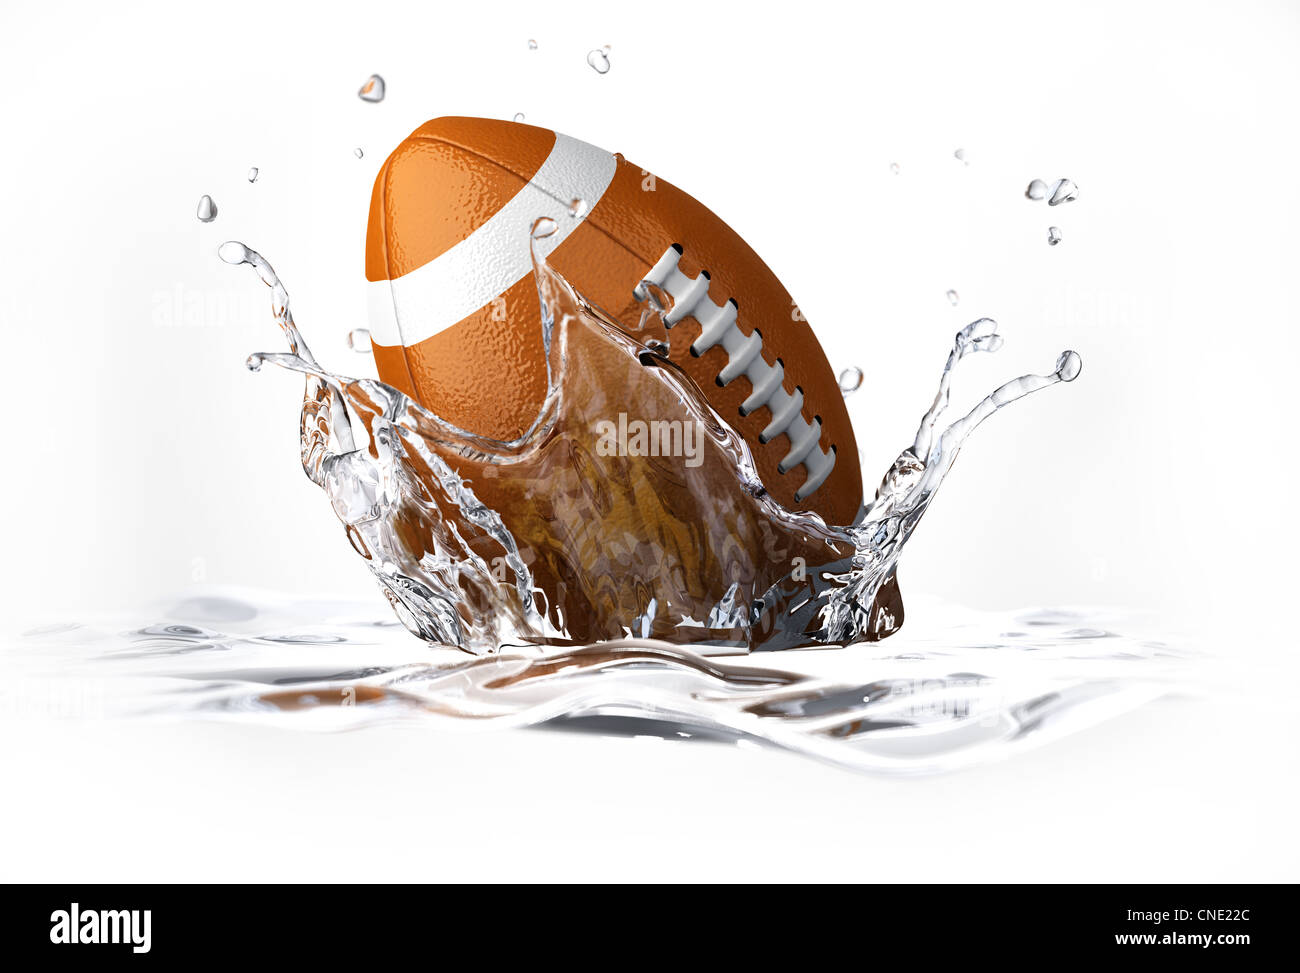 American Football pallina cadere in acqua chiara, formando una corona splash. Su sfondo bianco, con profondità di campo. Foto Stock